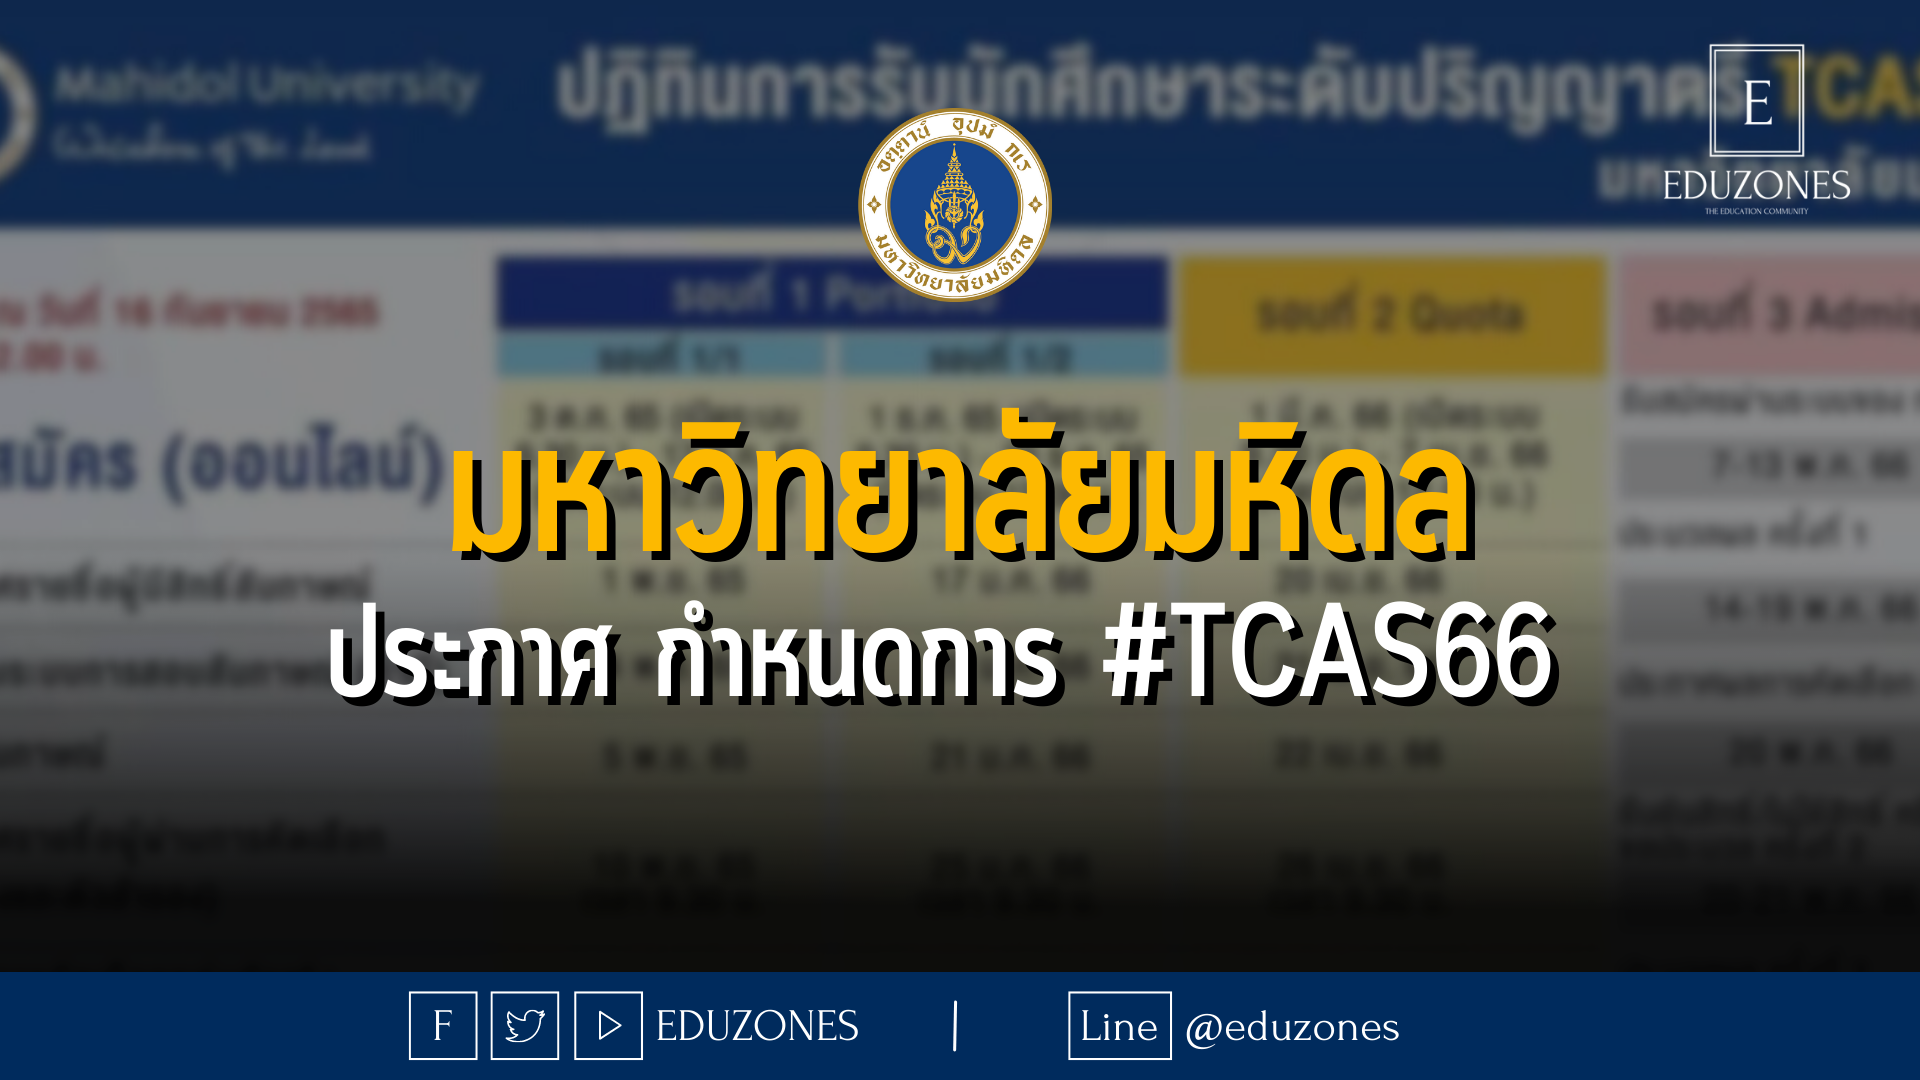 มหาวิทยาลัยมหิดล ประกาศกำหนดการ #TCAS66